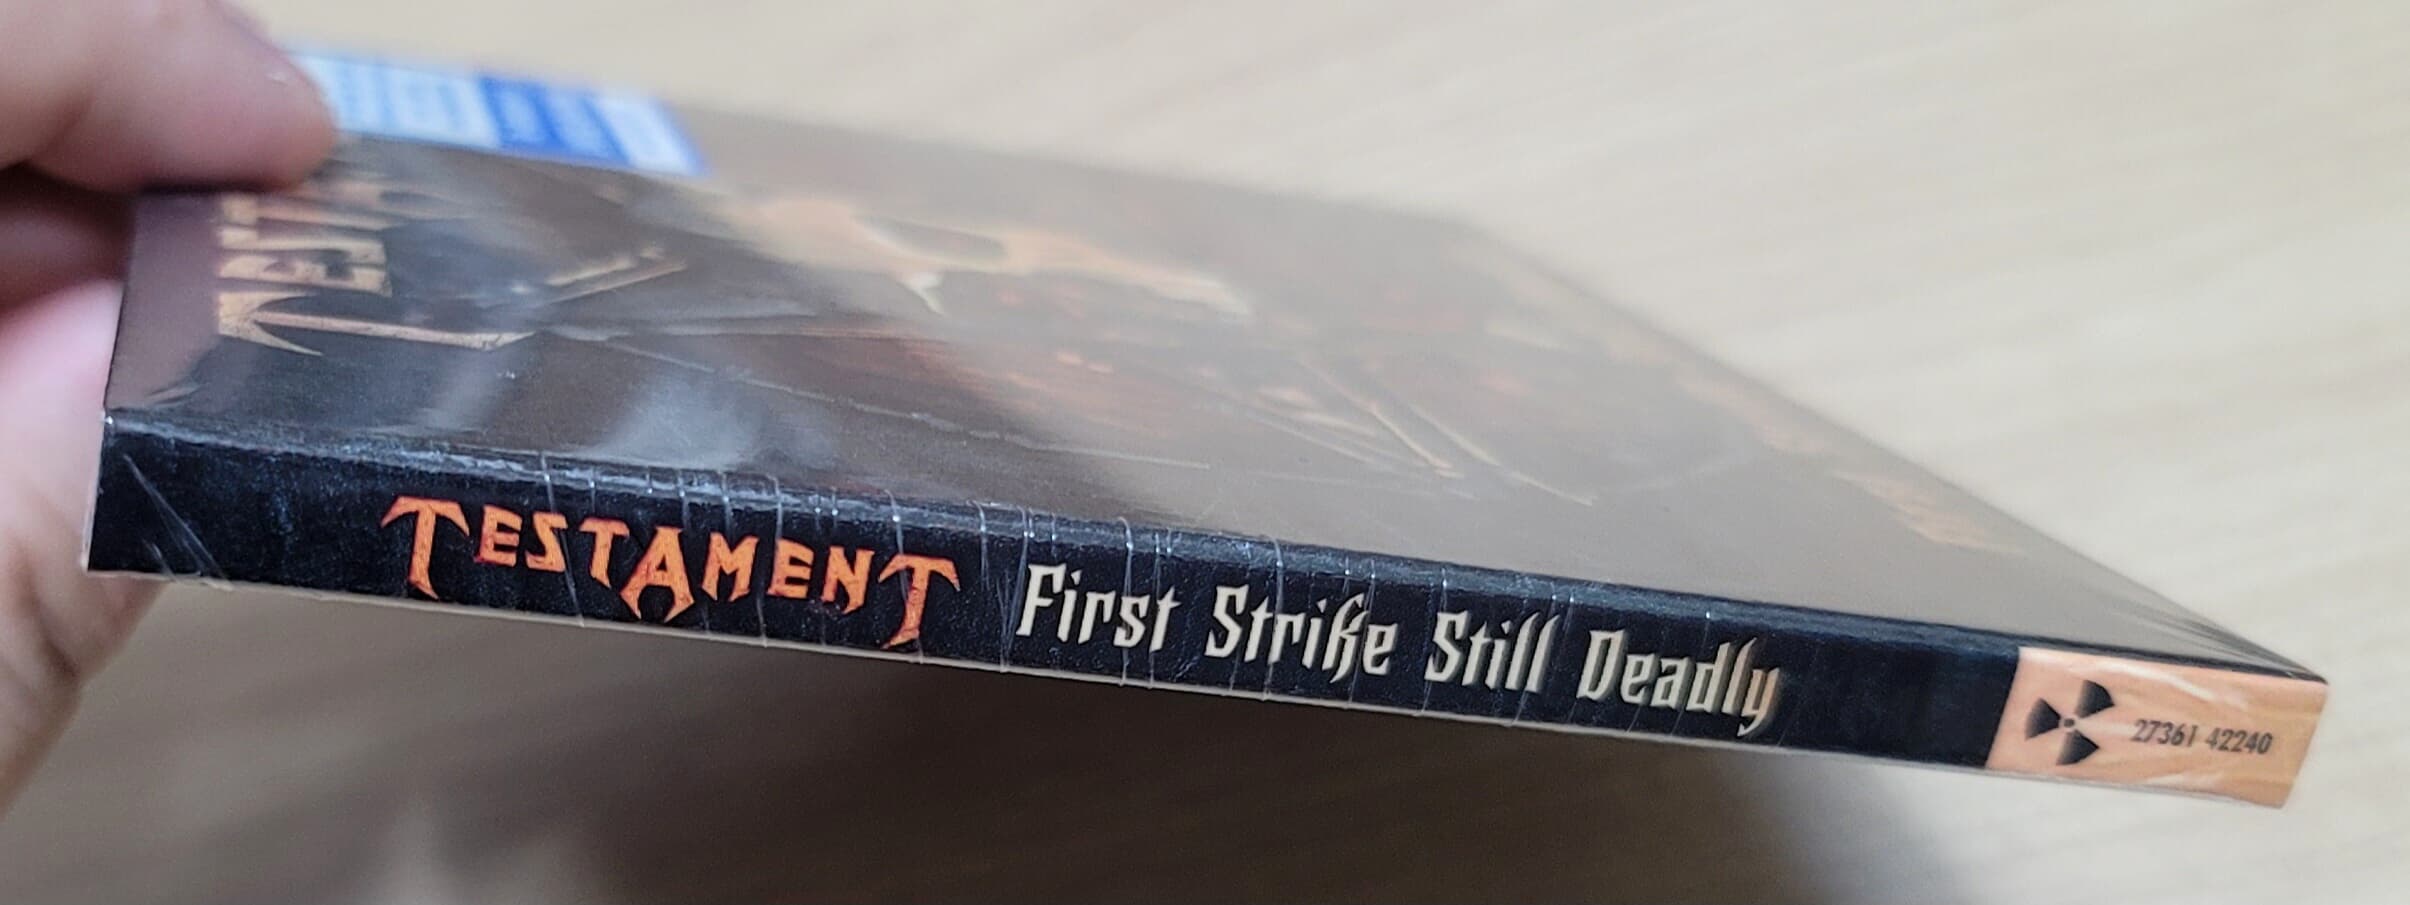 (미개봉 수입 한정반) Testament - First Strike Still Deadly